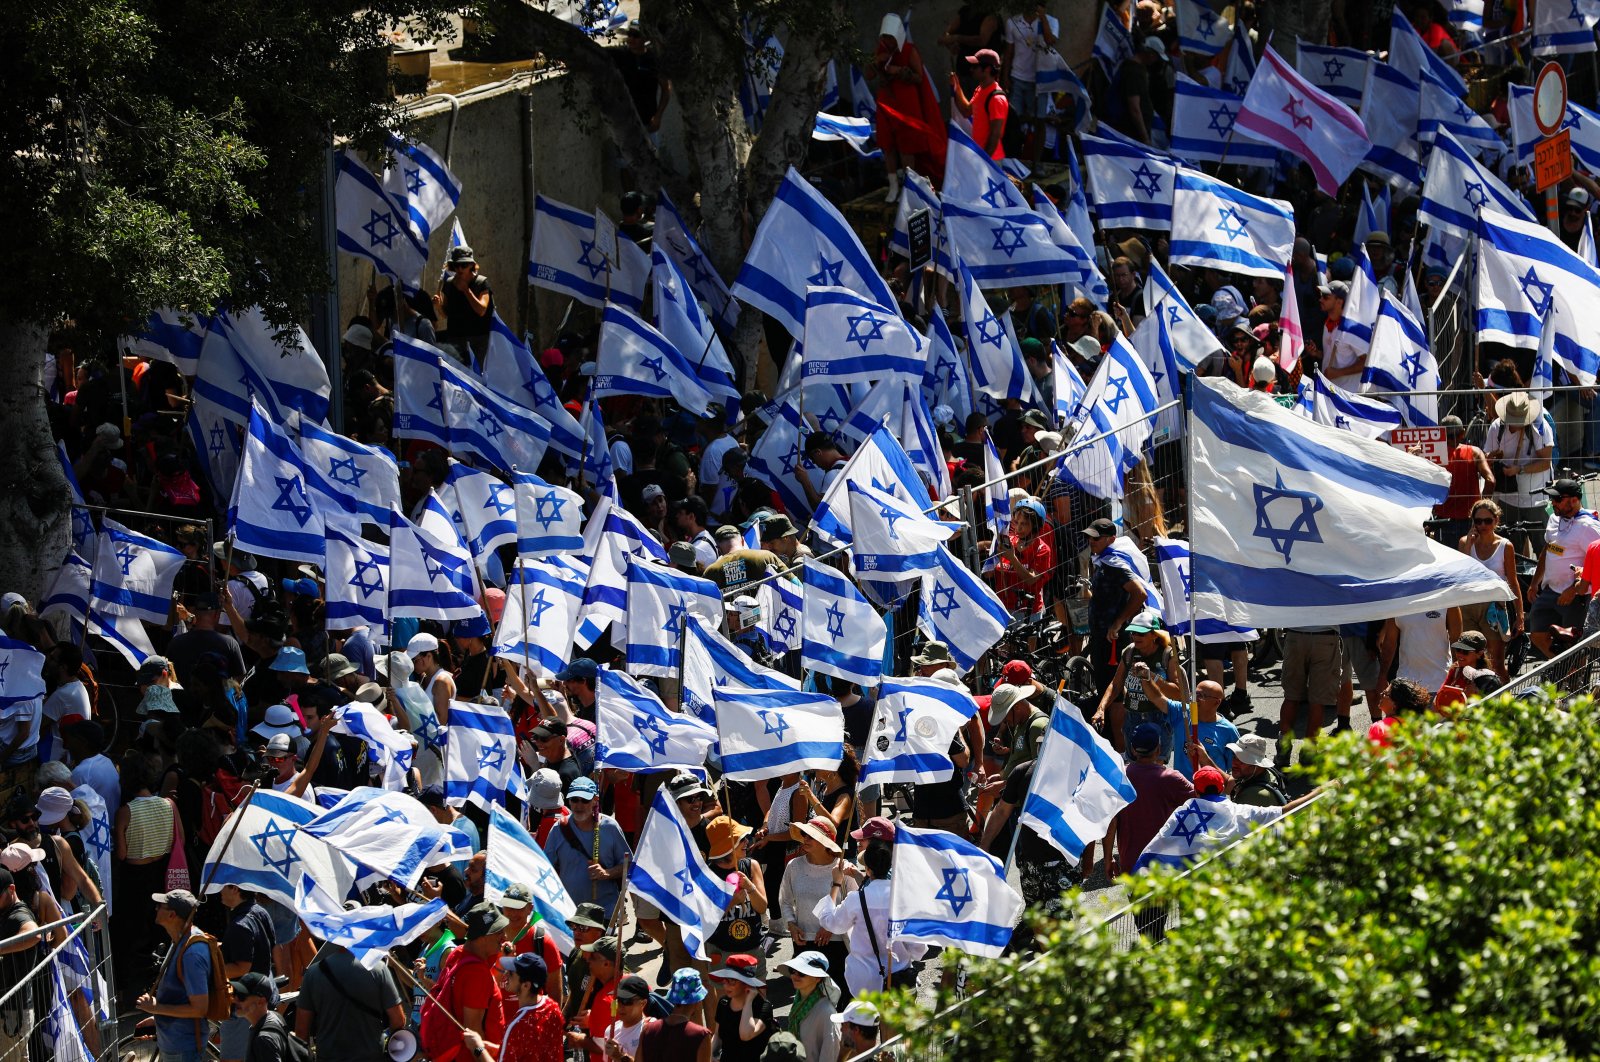 Hari gangguan: Israel memblokir jalan untuk menolak reformasi peradilan